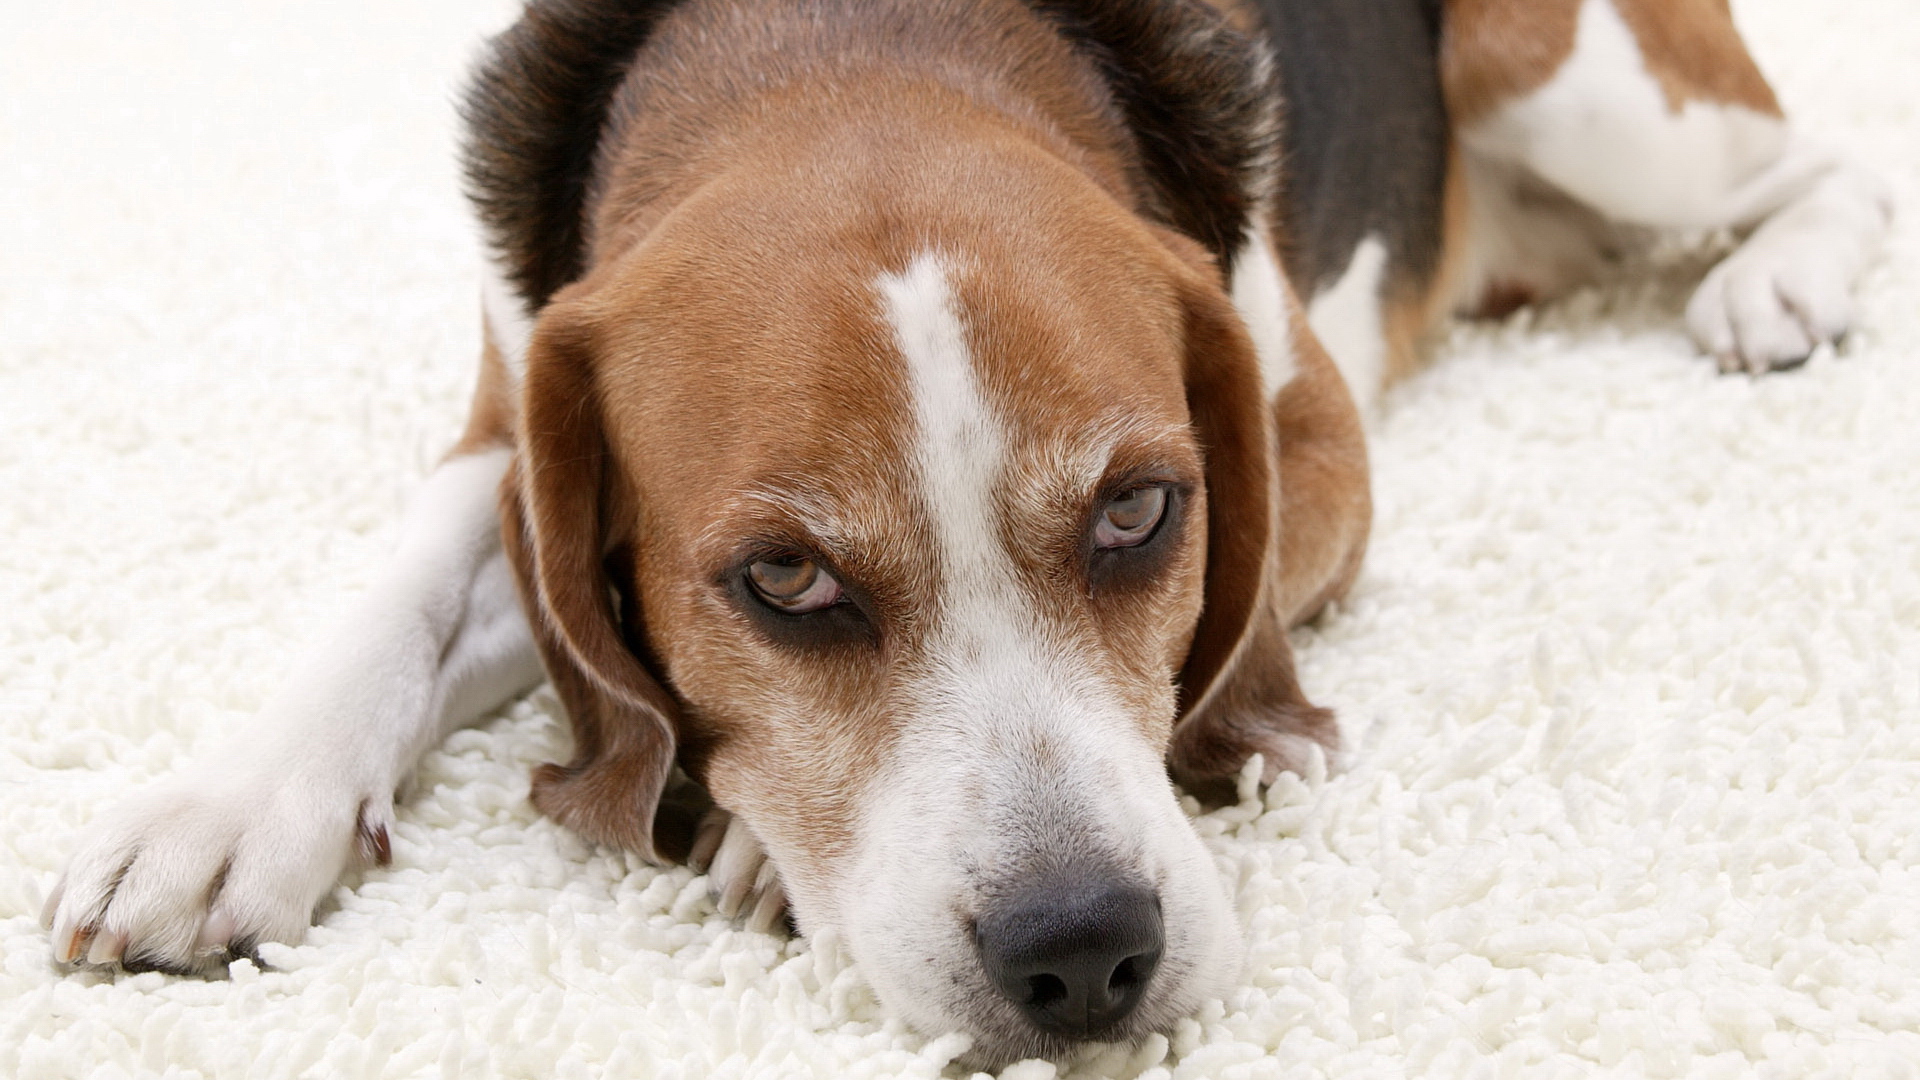 Beagle dog lying on the white carpet